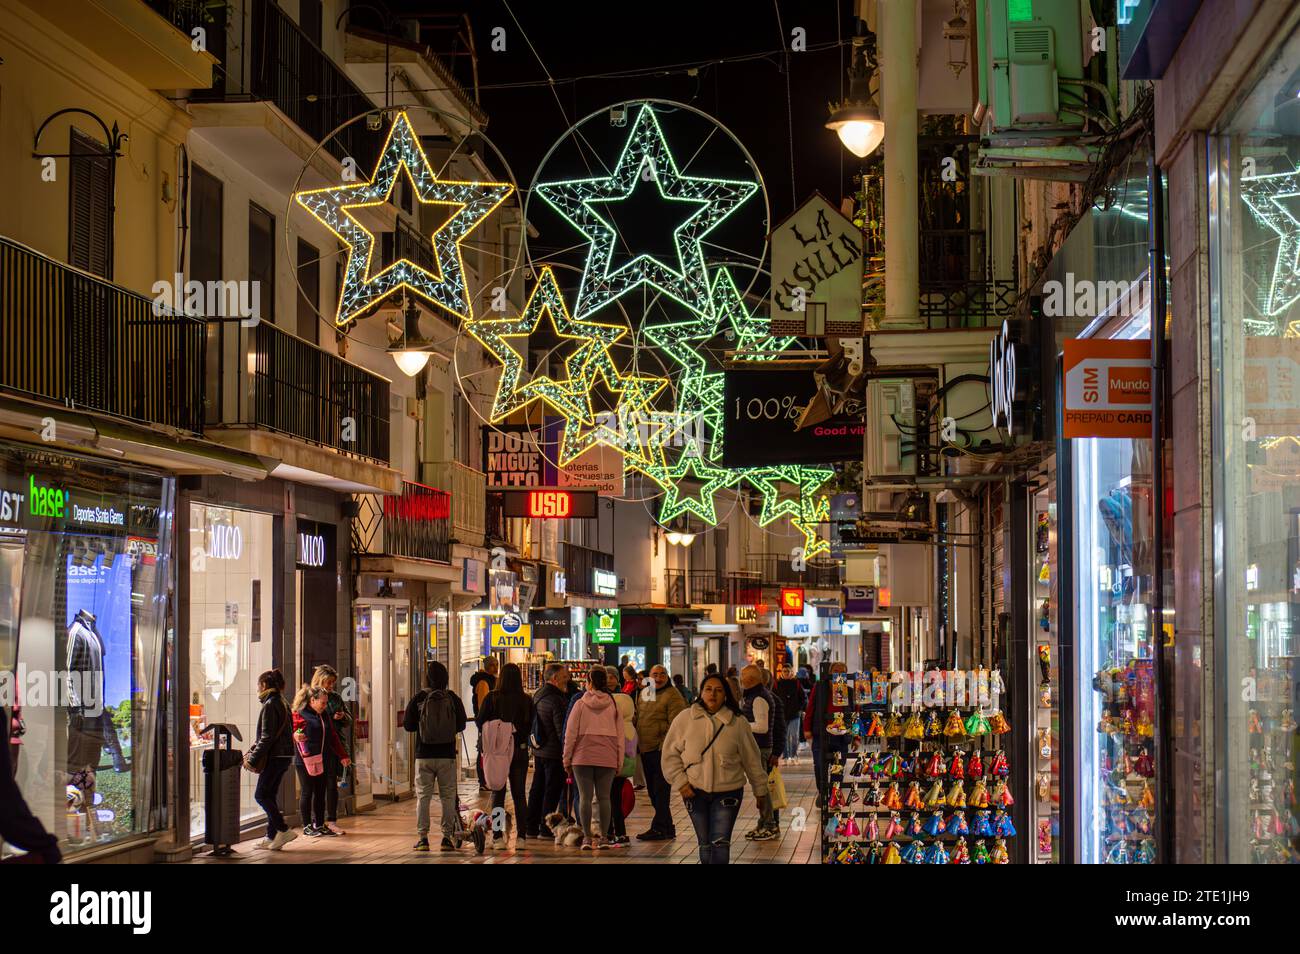 TORREMOLINOS, SPANIEN - 14. DEZEMBER 2023: Fangen Sie den festlichen Charme der Weihnachtsbeleuchtung und des Weihnachtsbaums in Torremolinos, Spanien, am 15. Dezember 2023 ein Stockfoto